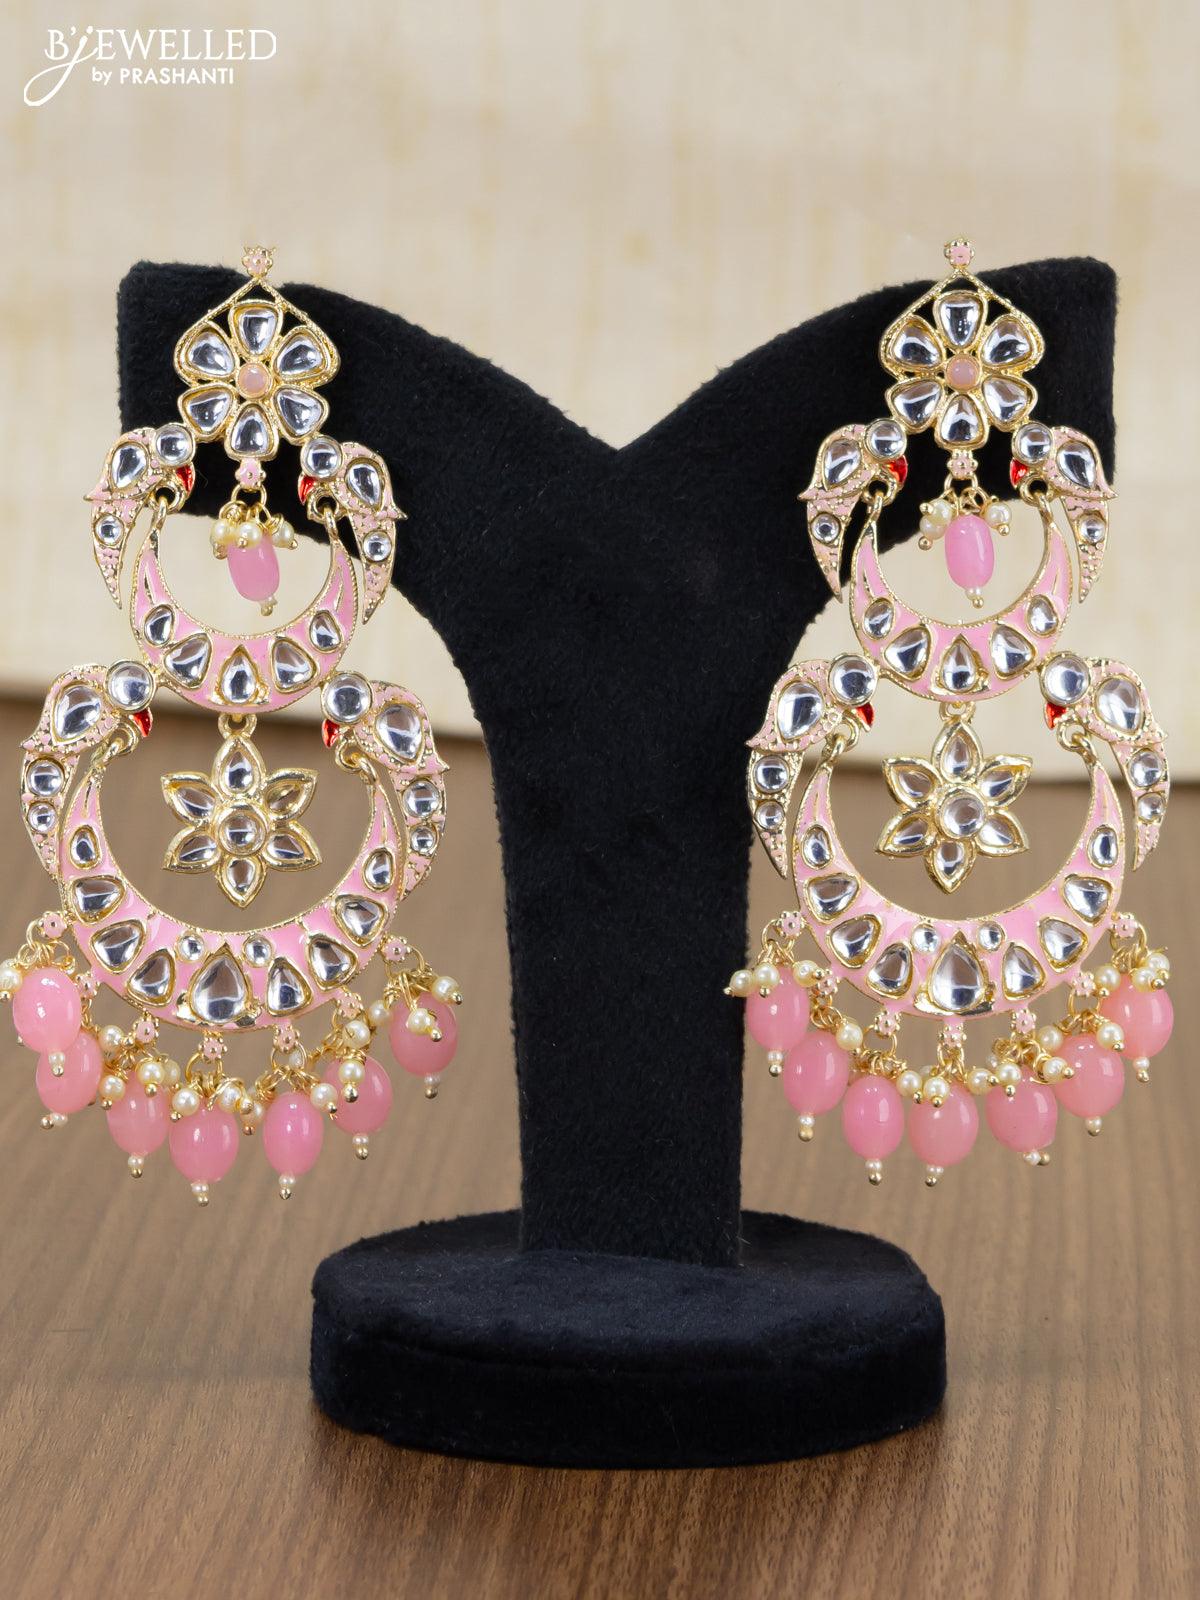 Kate Spade New York Earrings Flower Studs Gold Plated Light Pink -  Walmart.com